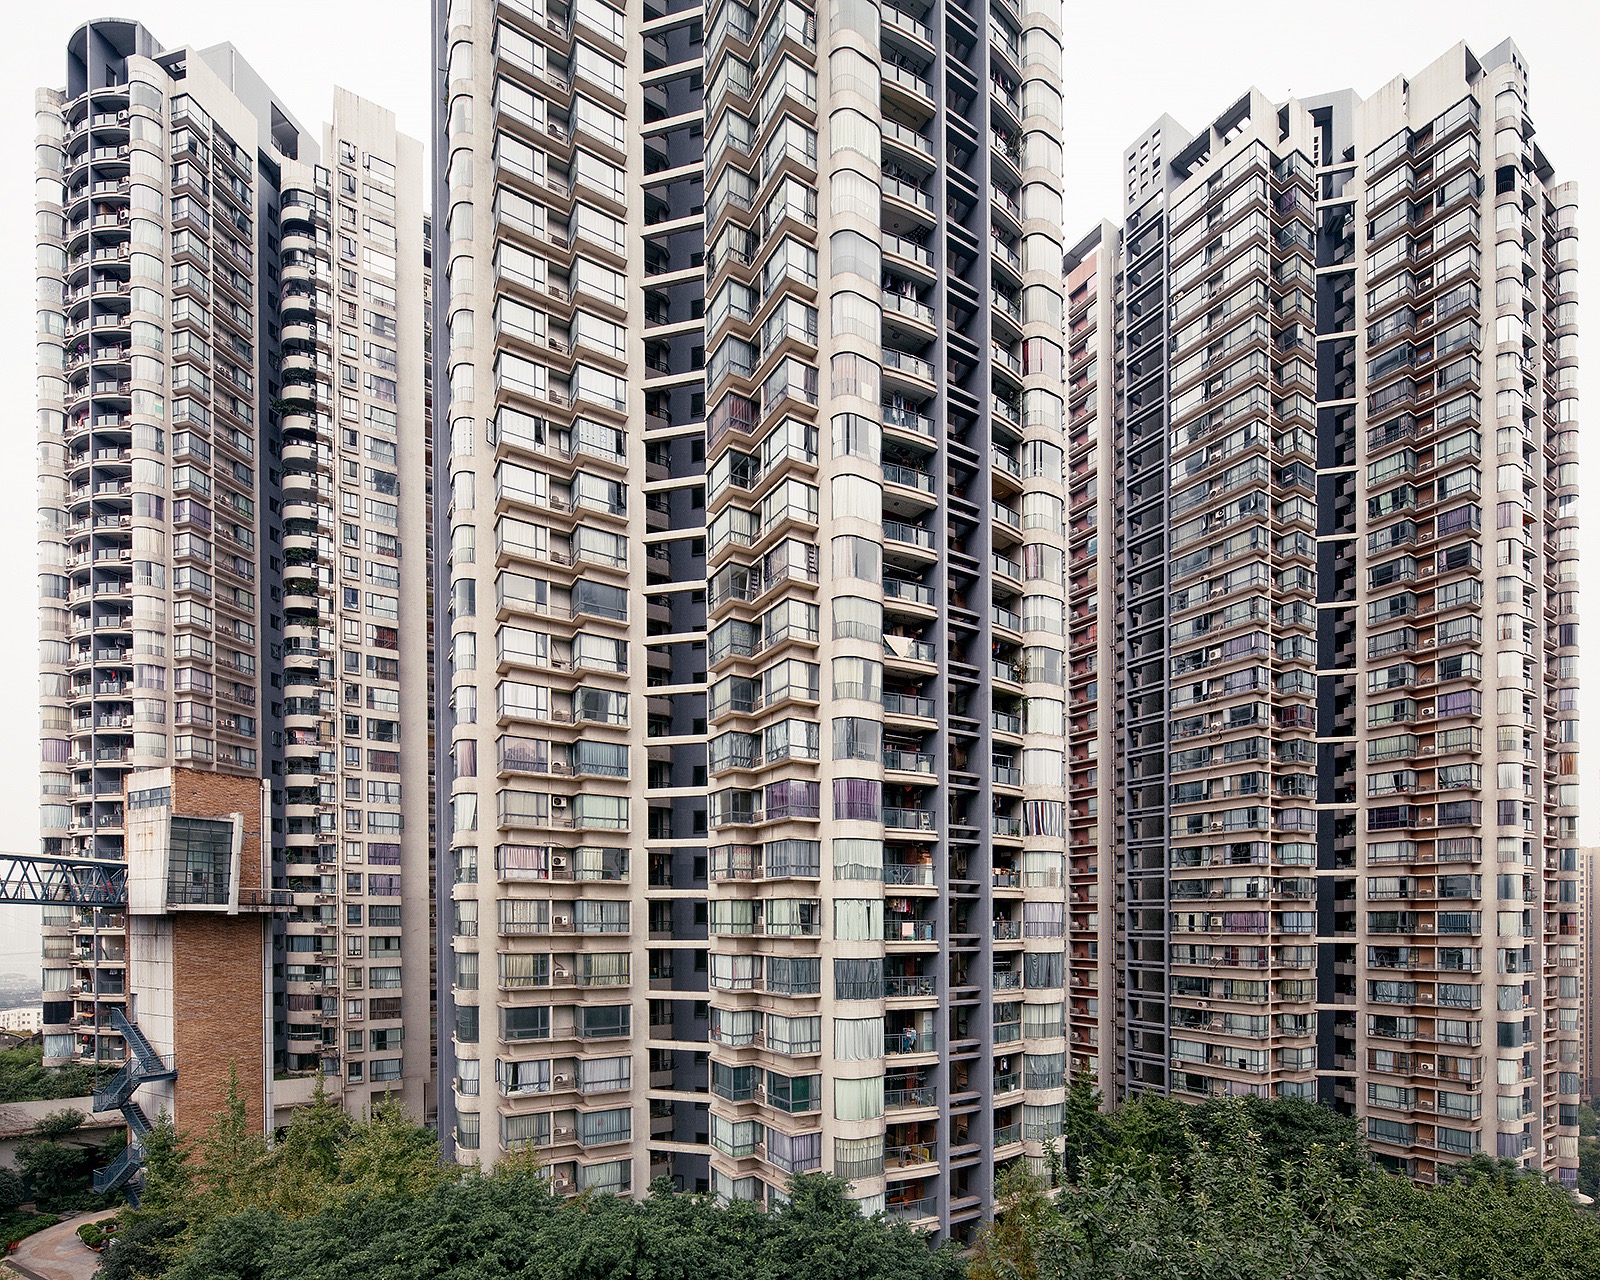 Tongyuanju Towers